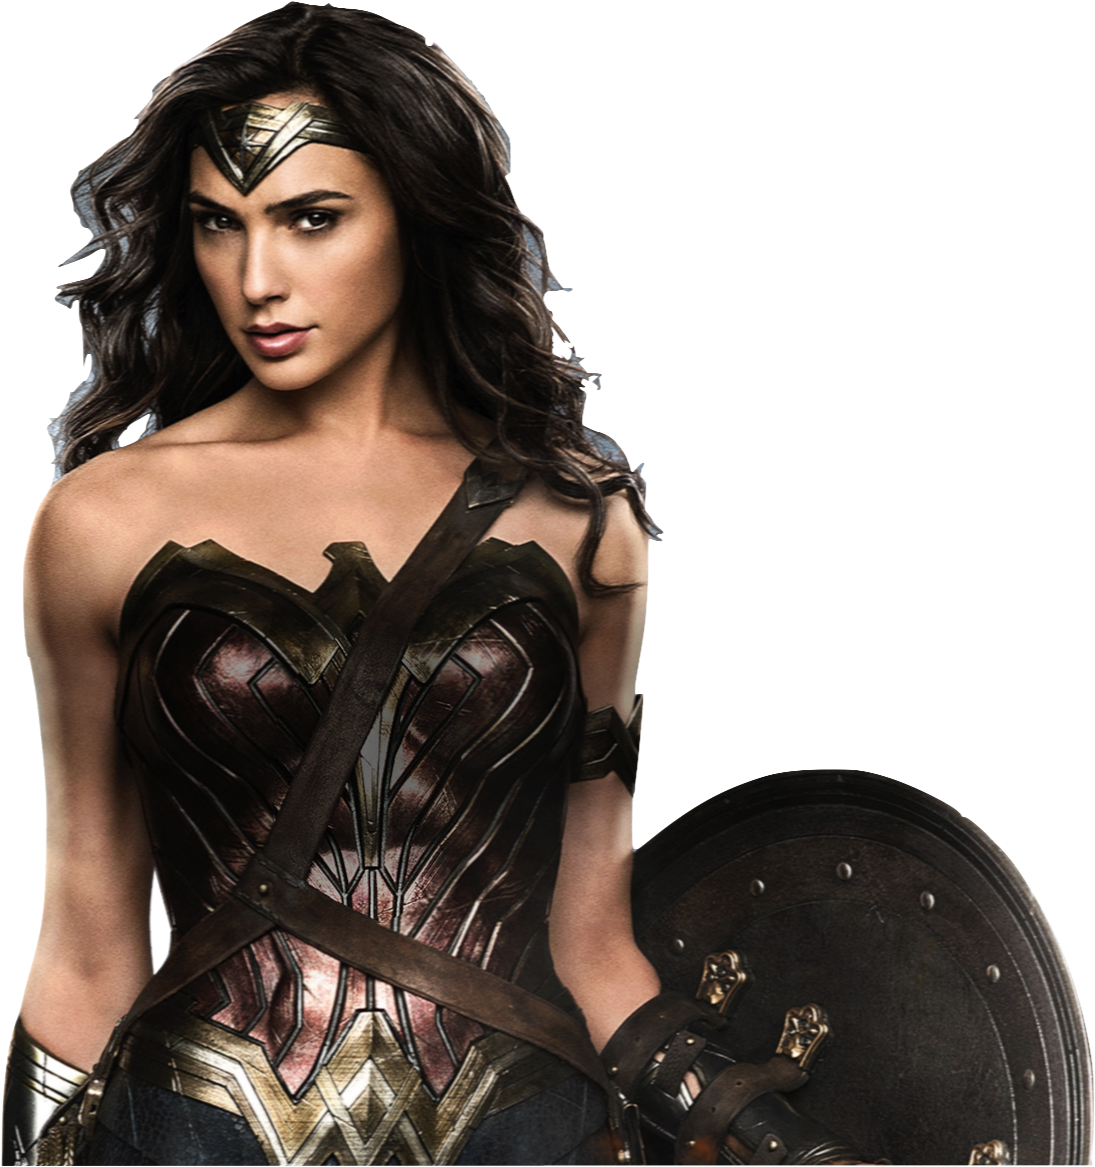 Gal Gadot - Wonder Woman (201